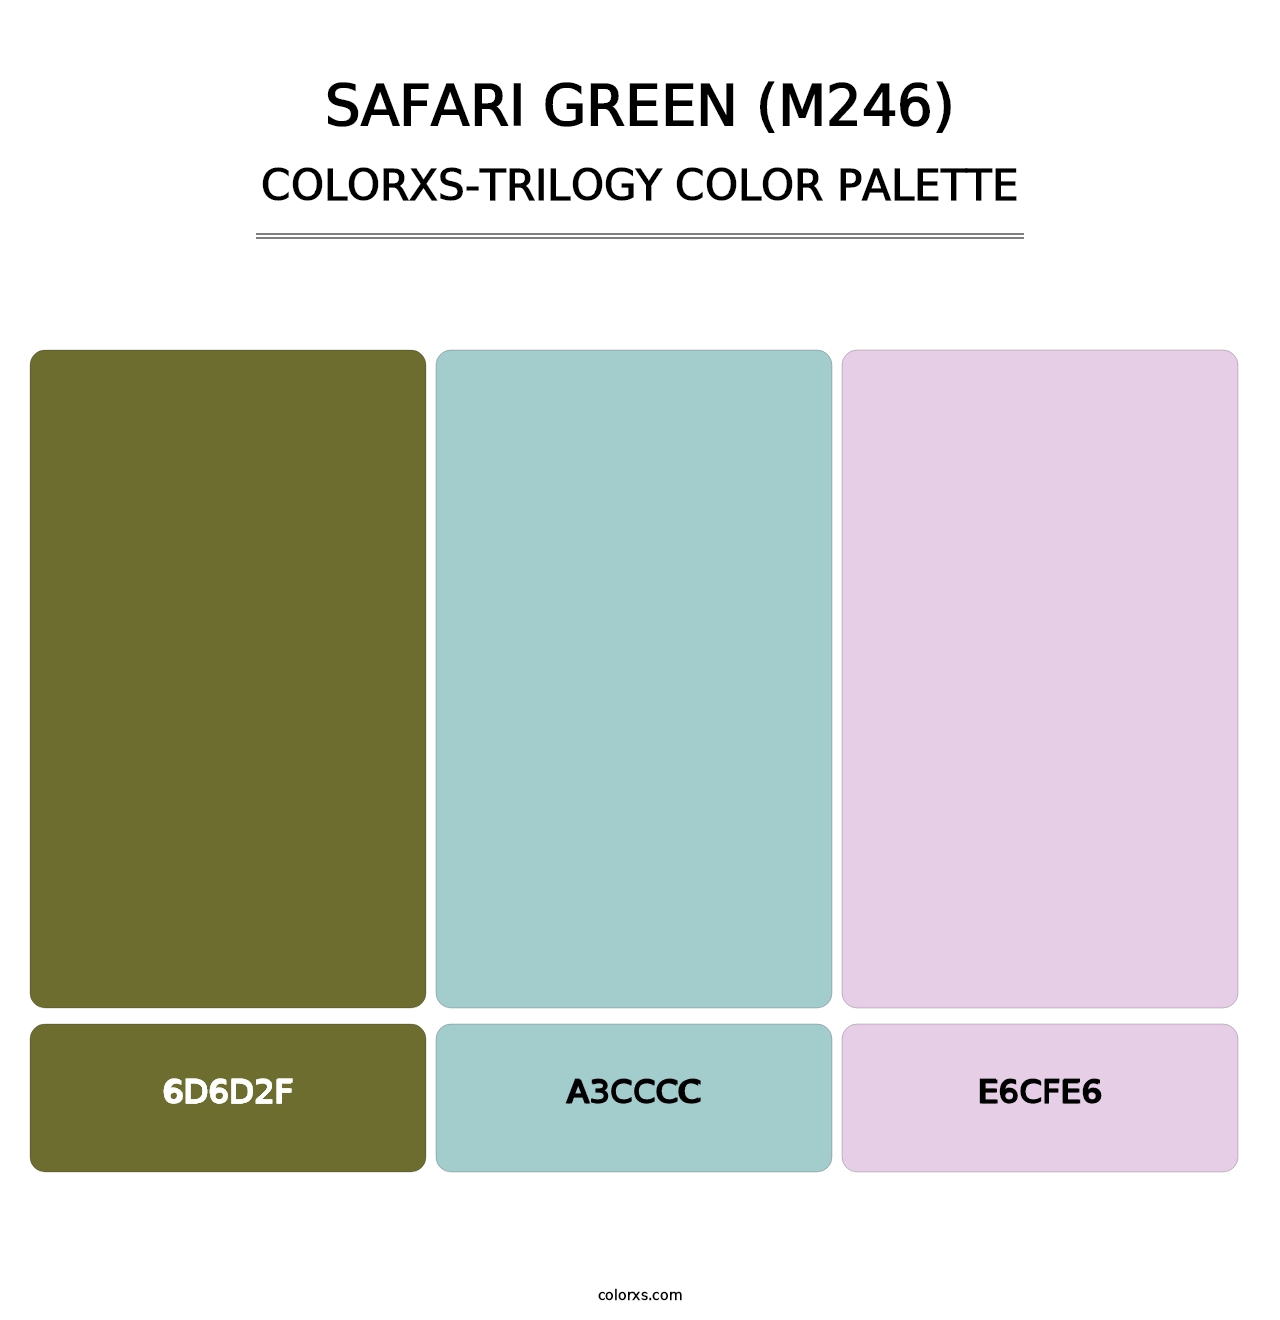 Safari Green (M246) - Colorxs Trilogy Palette